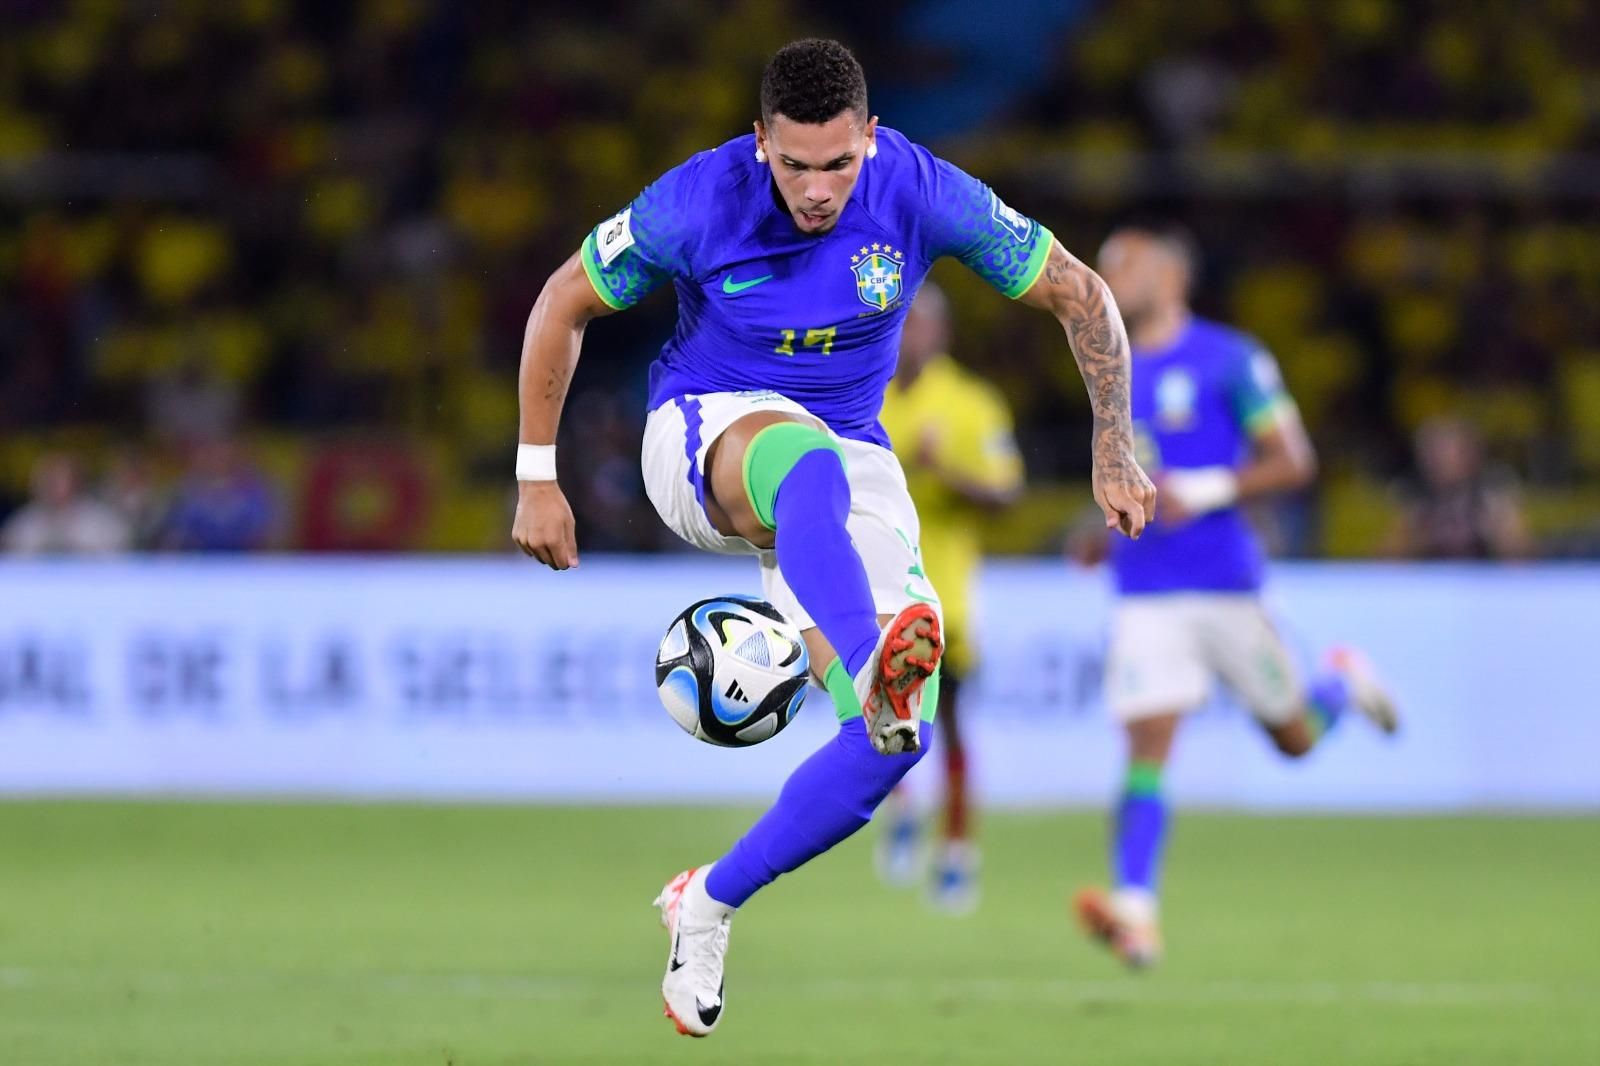 Seleção Brasileira enfrenta Colômbia em seu segundo jogo no Pré